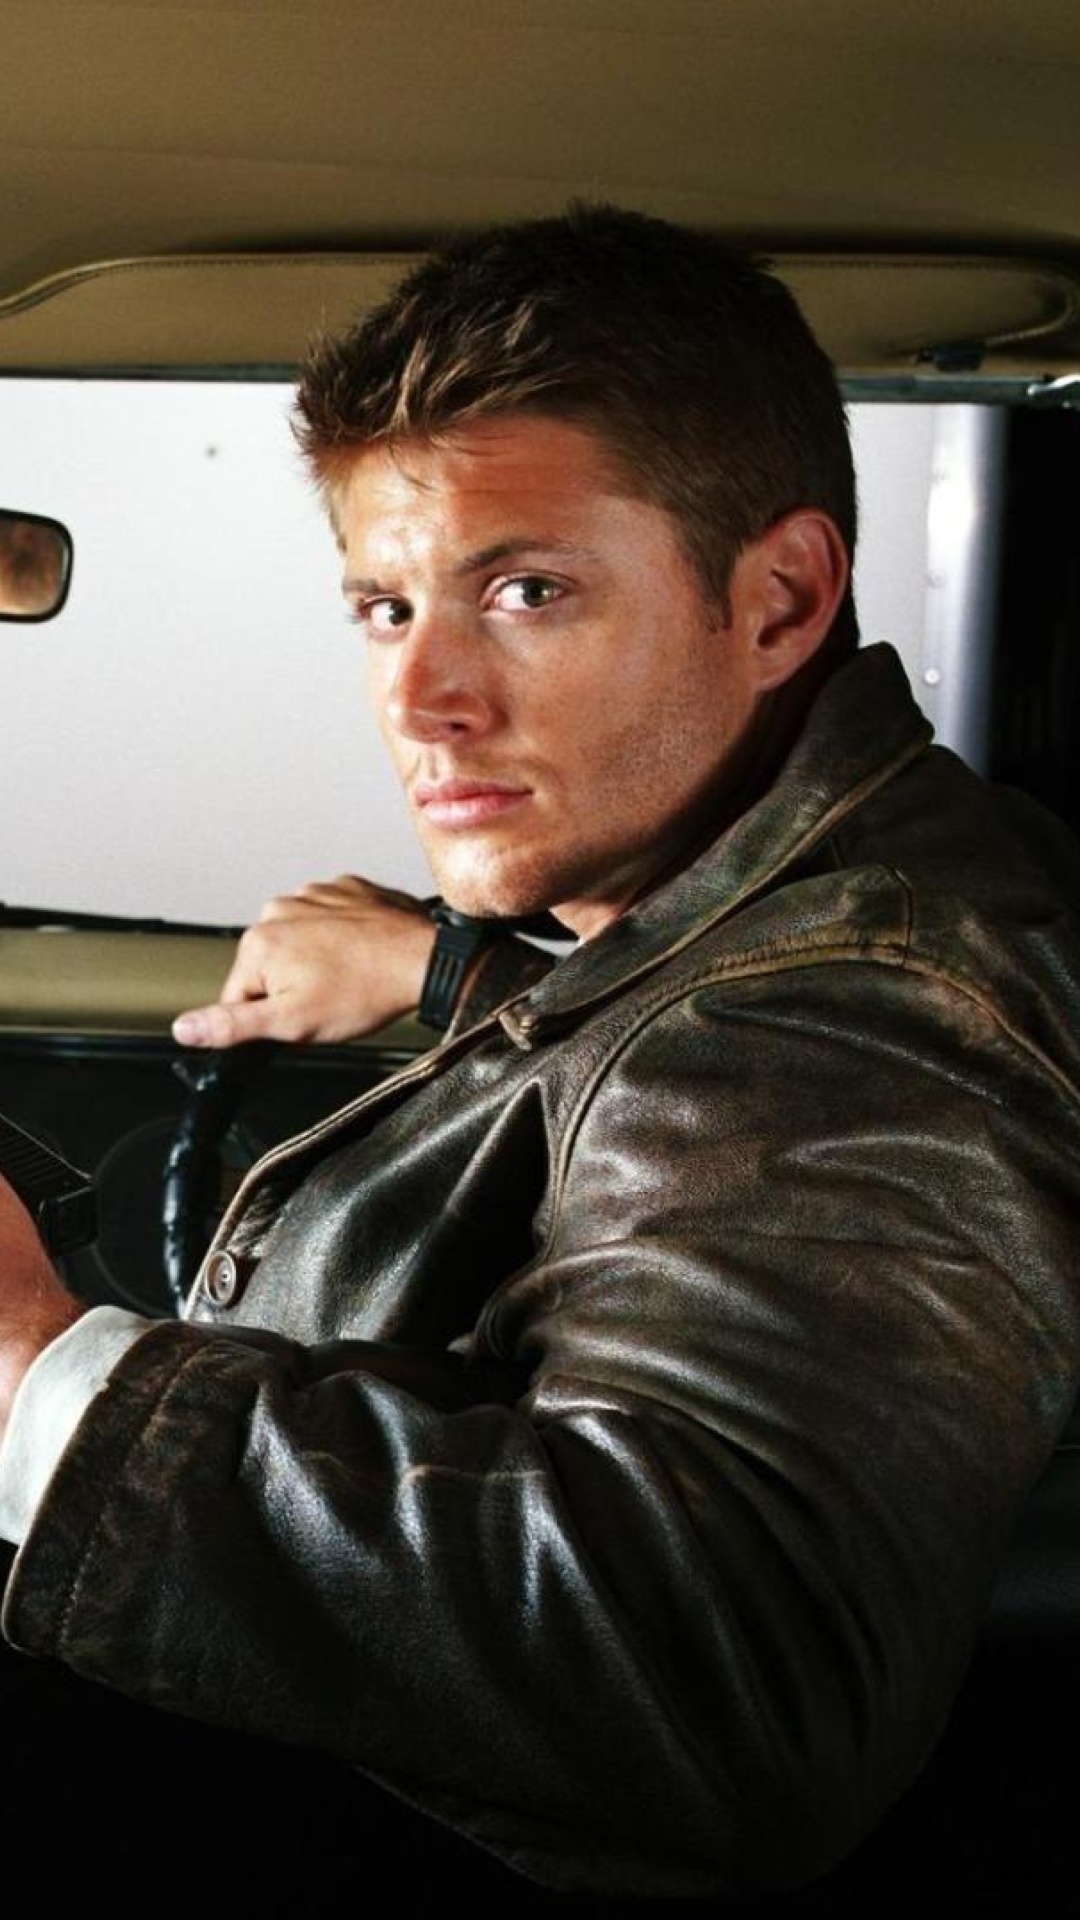 Das Supernatural, Dean Winchester, Jensen Ackles Wallpaper 1080x1920